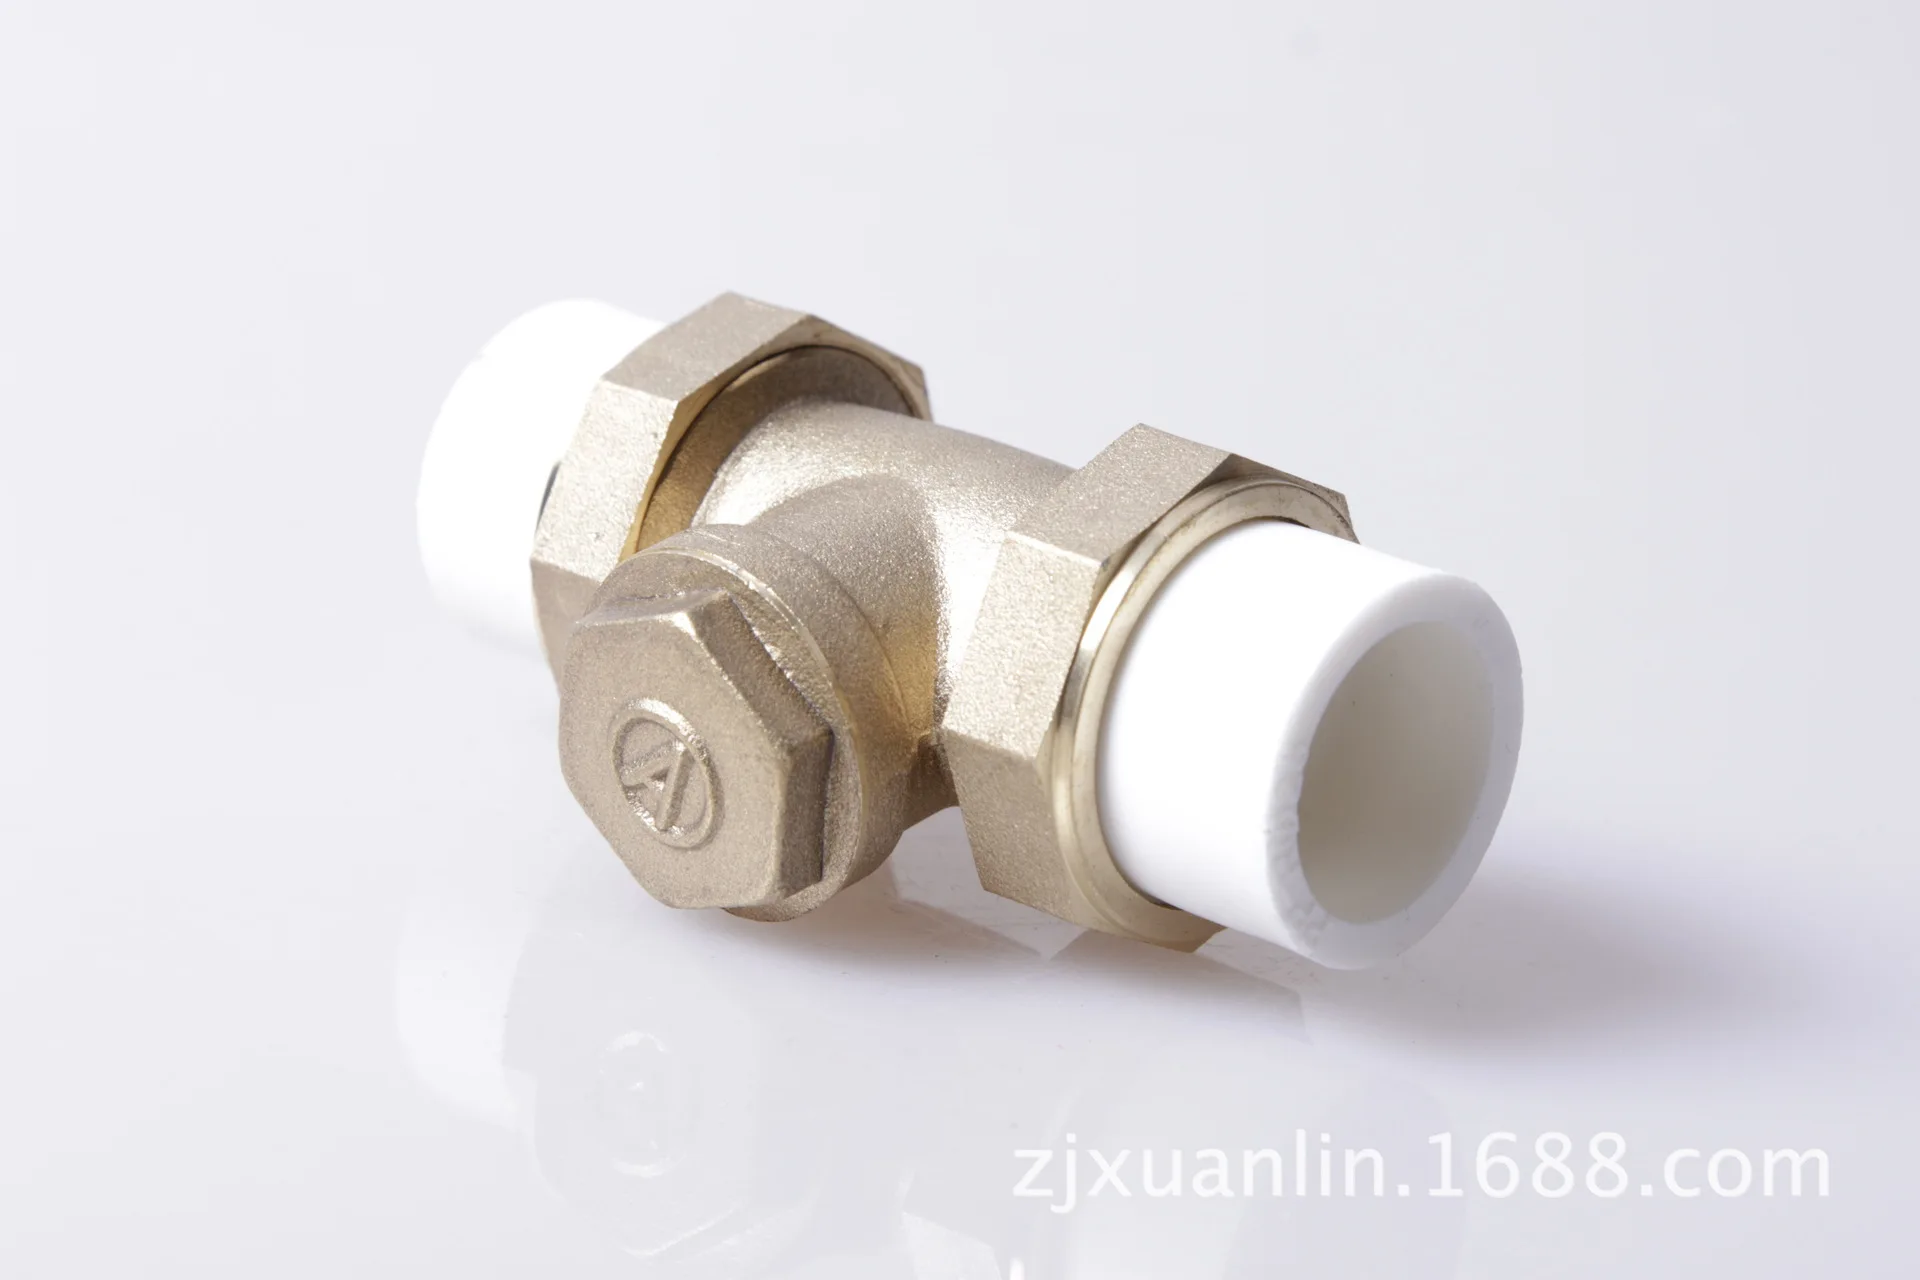 Yuhuan Сюань Лин производители питания ppr обратный клапан меди обратный клапан ppr медные горизонтальные обратный клапан 4 балла-1 дюймов live